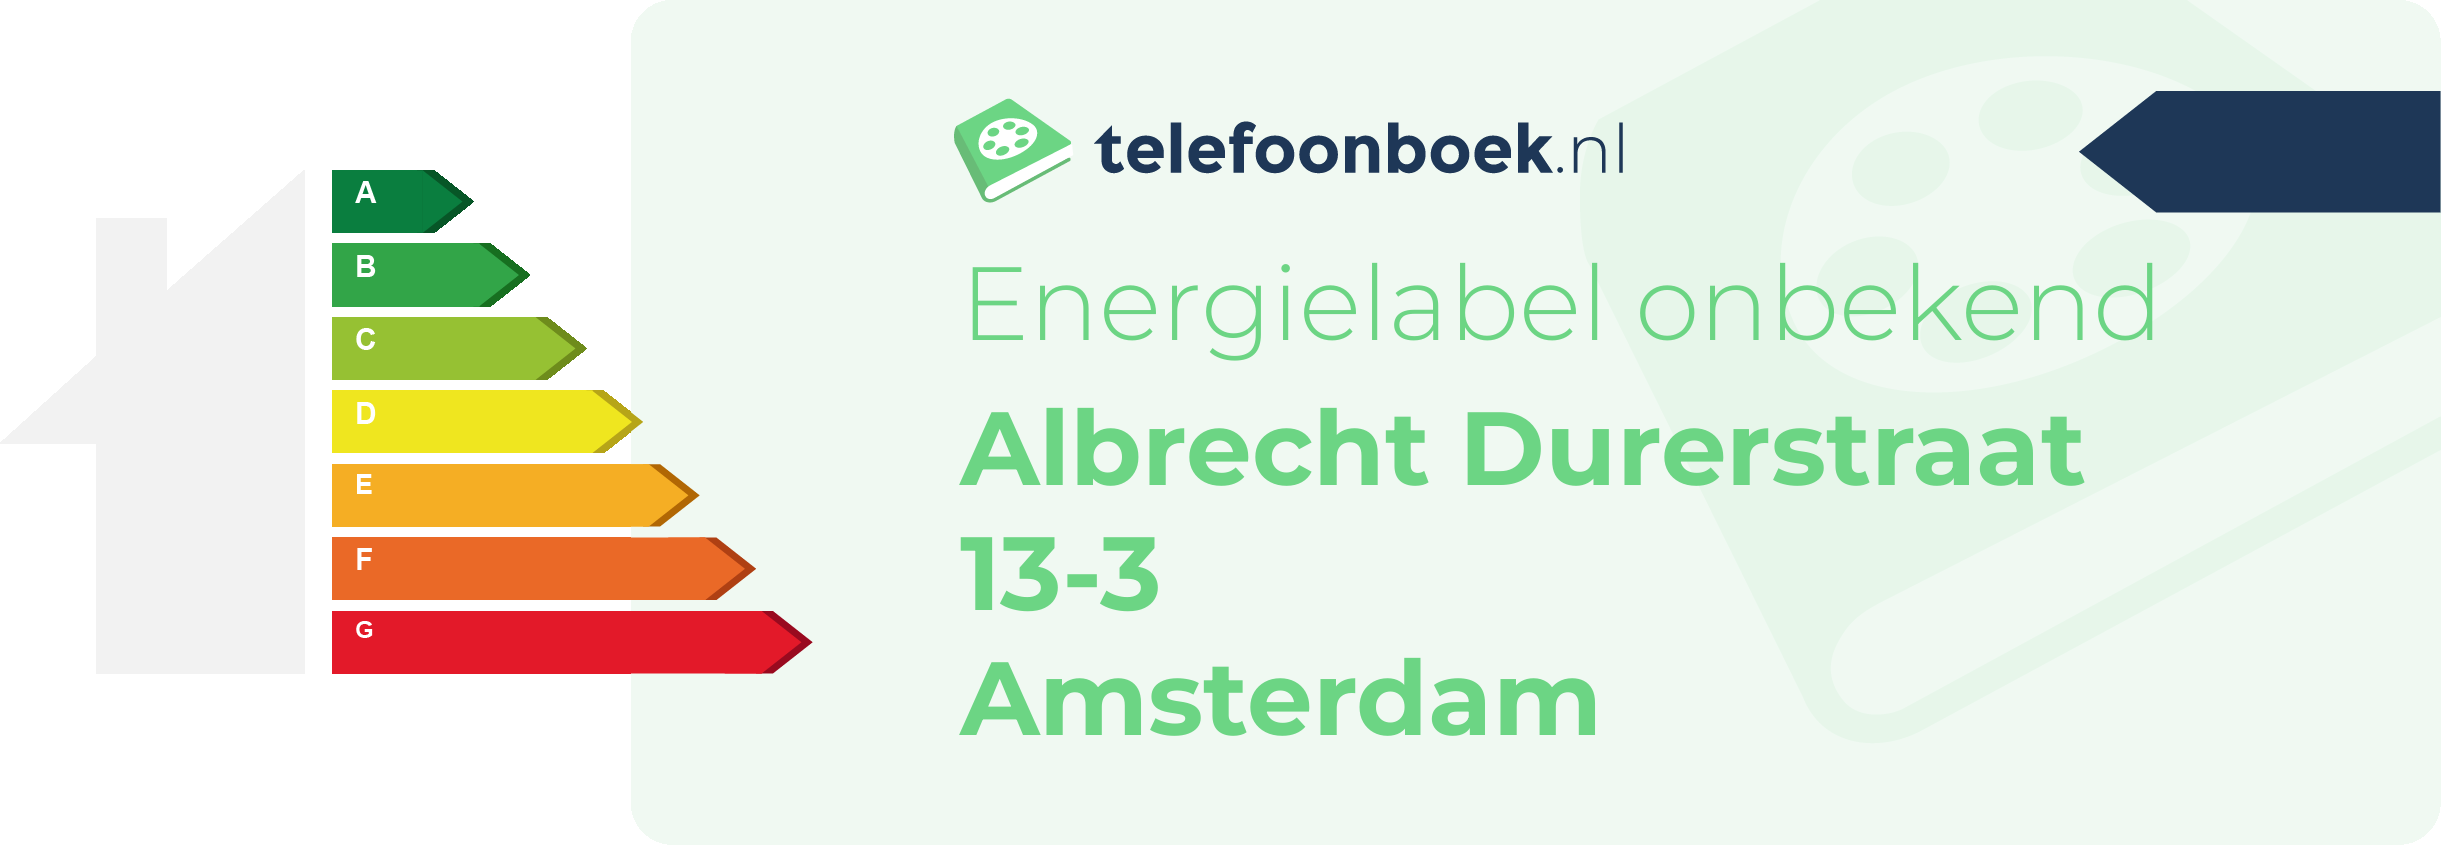 Energielabel Albrecht Durerstraat 13-3 Amsterdam